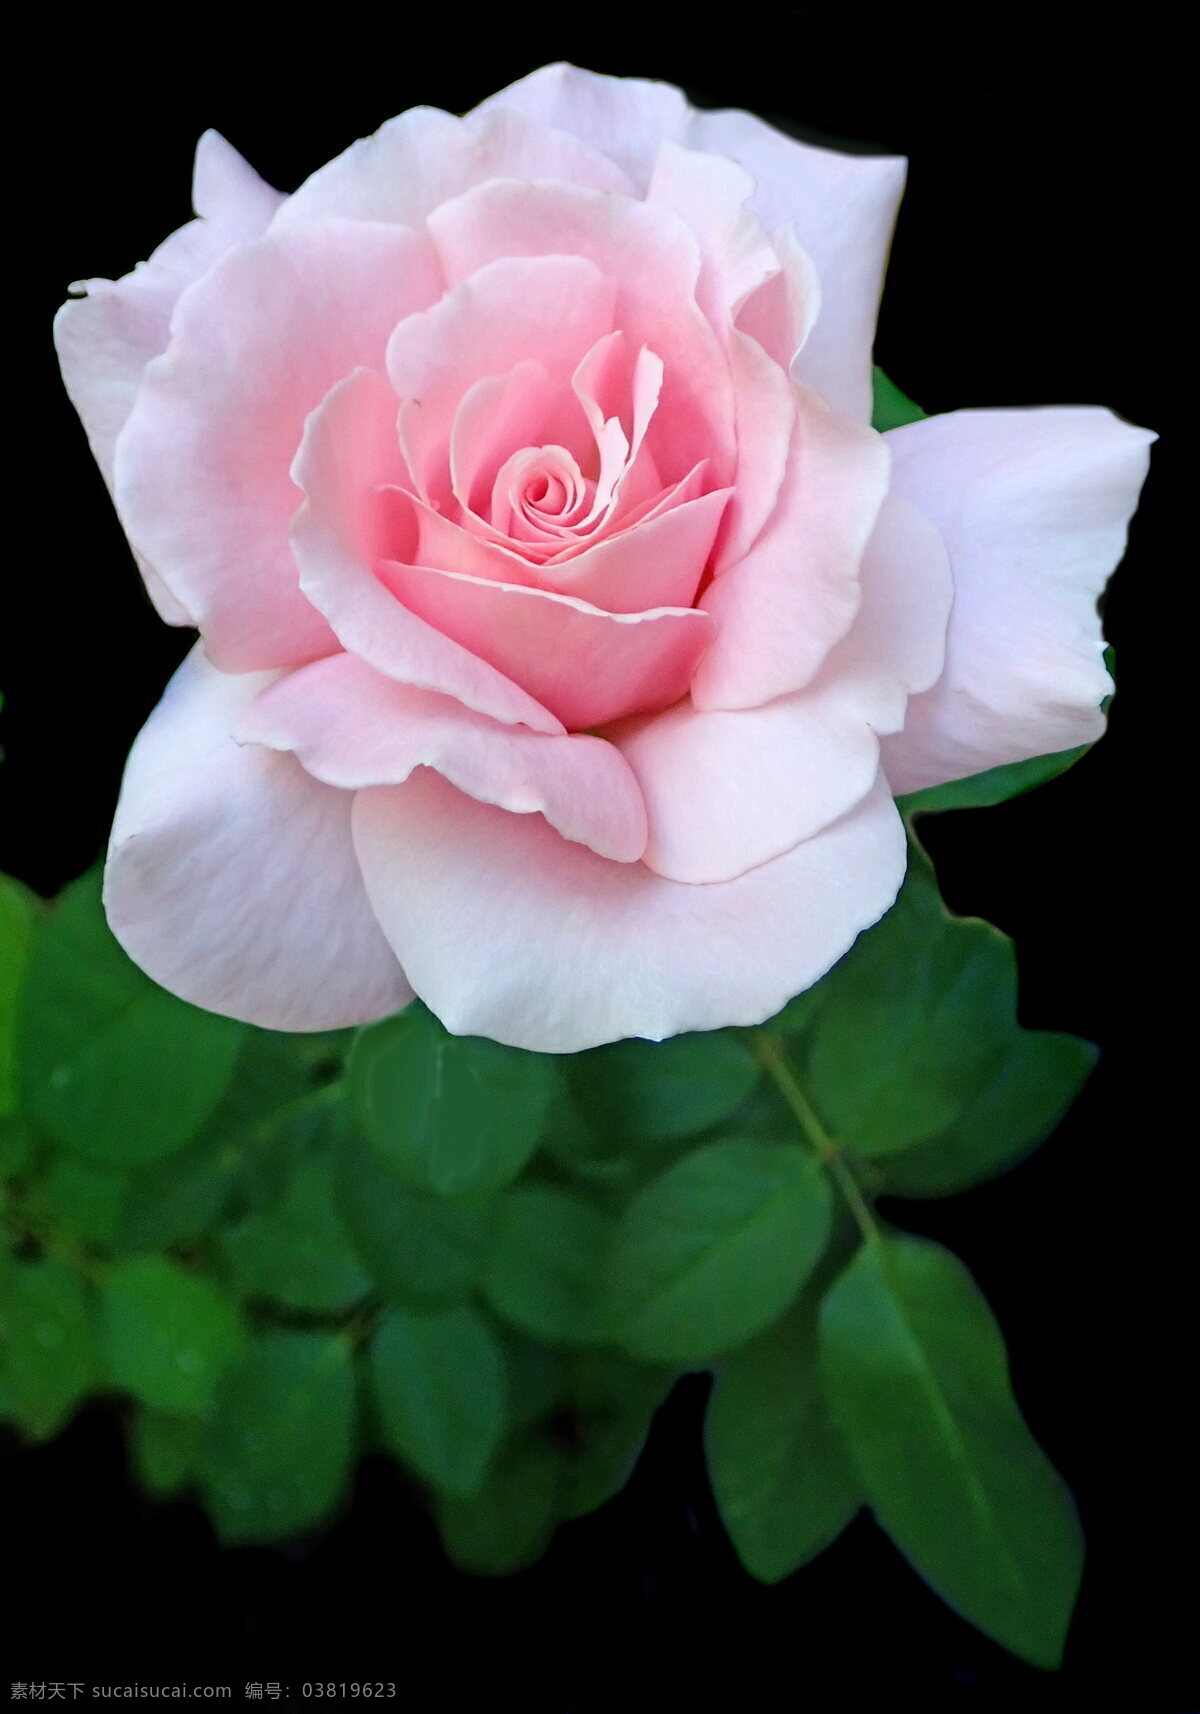 漂亮粉色玫瑰 一朵玫瑰 漂亮玫瑰 一朵花 漂亮 玫瑰 花朵 粉色花朵 漂亮花朵 鲜花 花蕊 花瓣 花卉 生物世界 花草